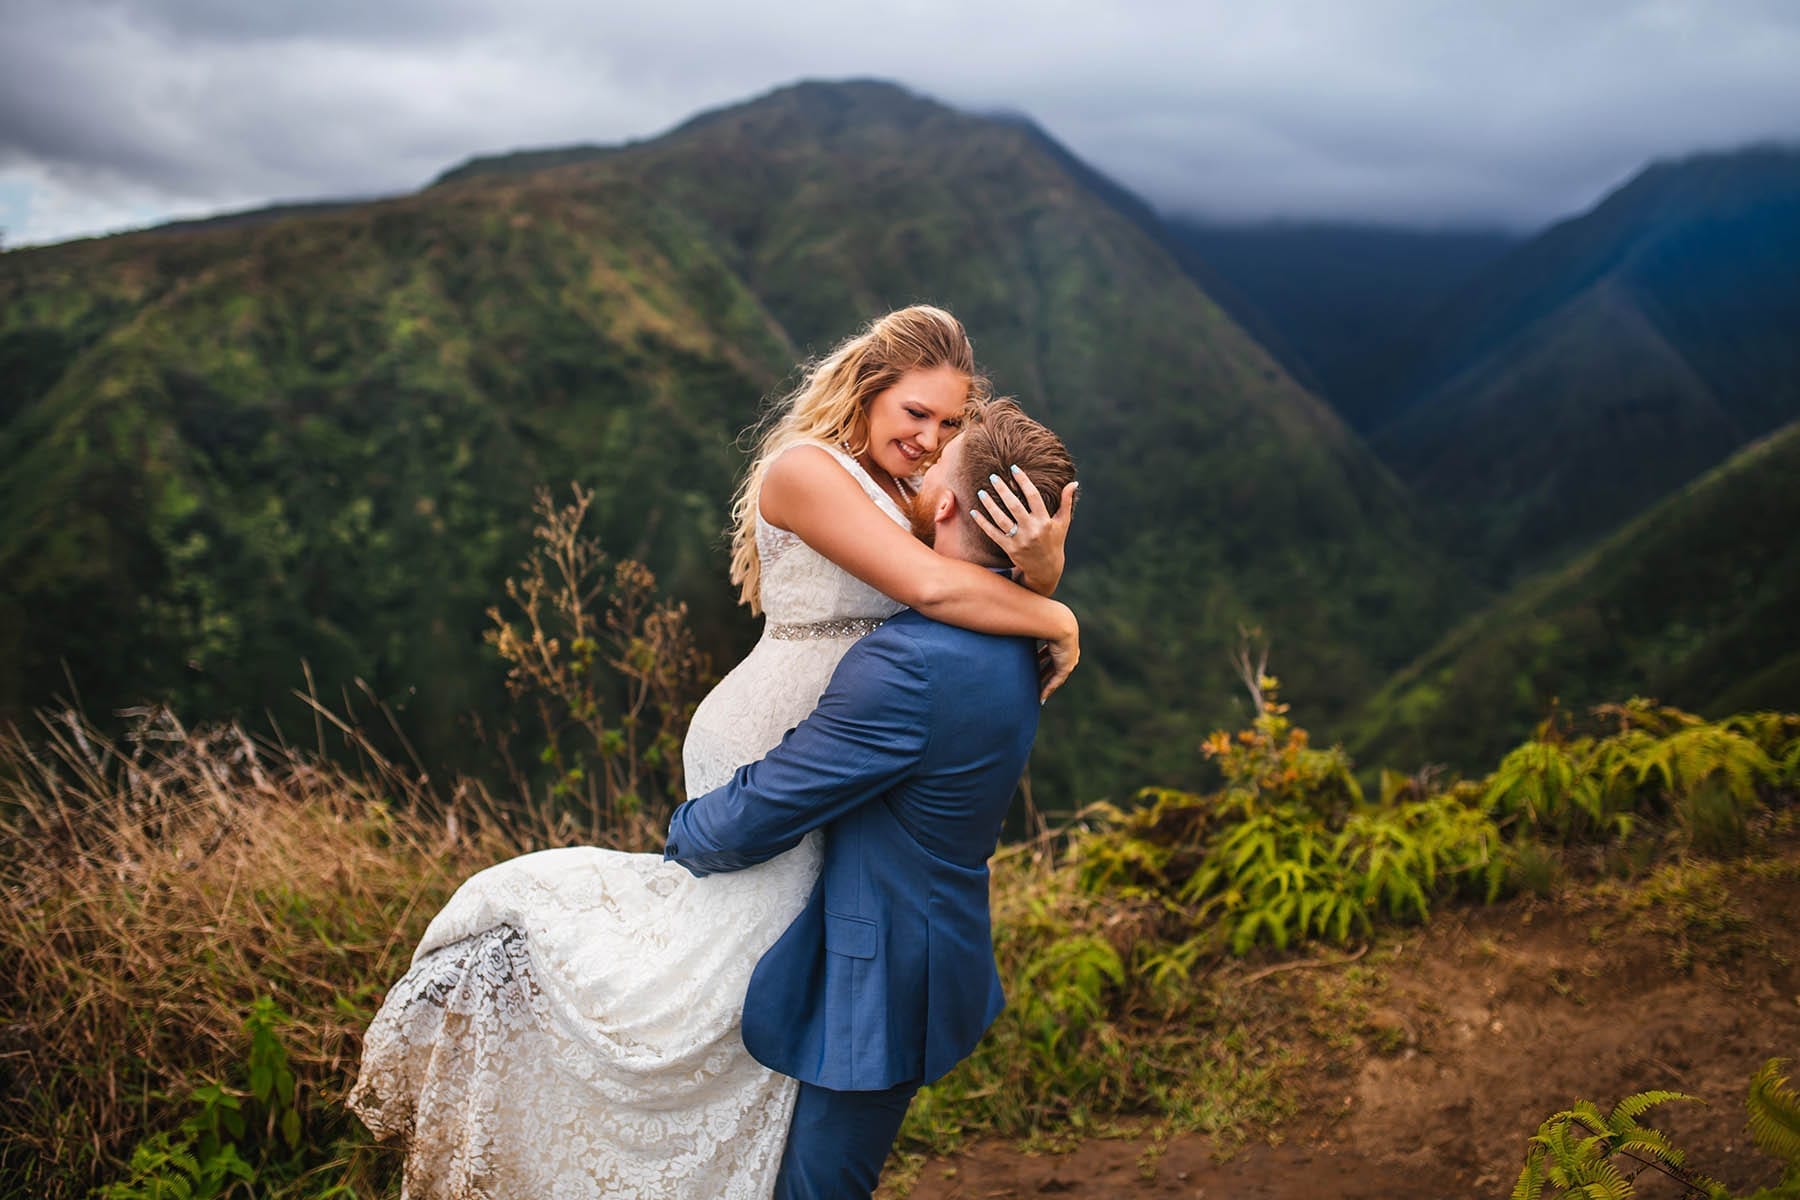 epic Hawaii wedding photos